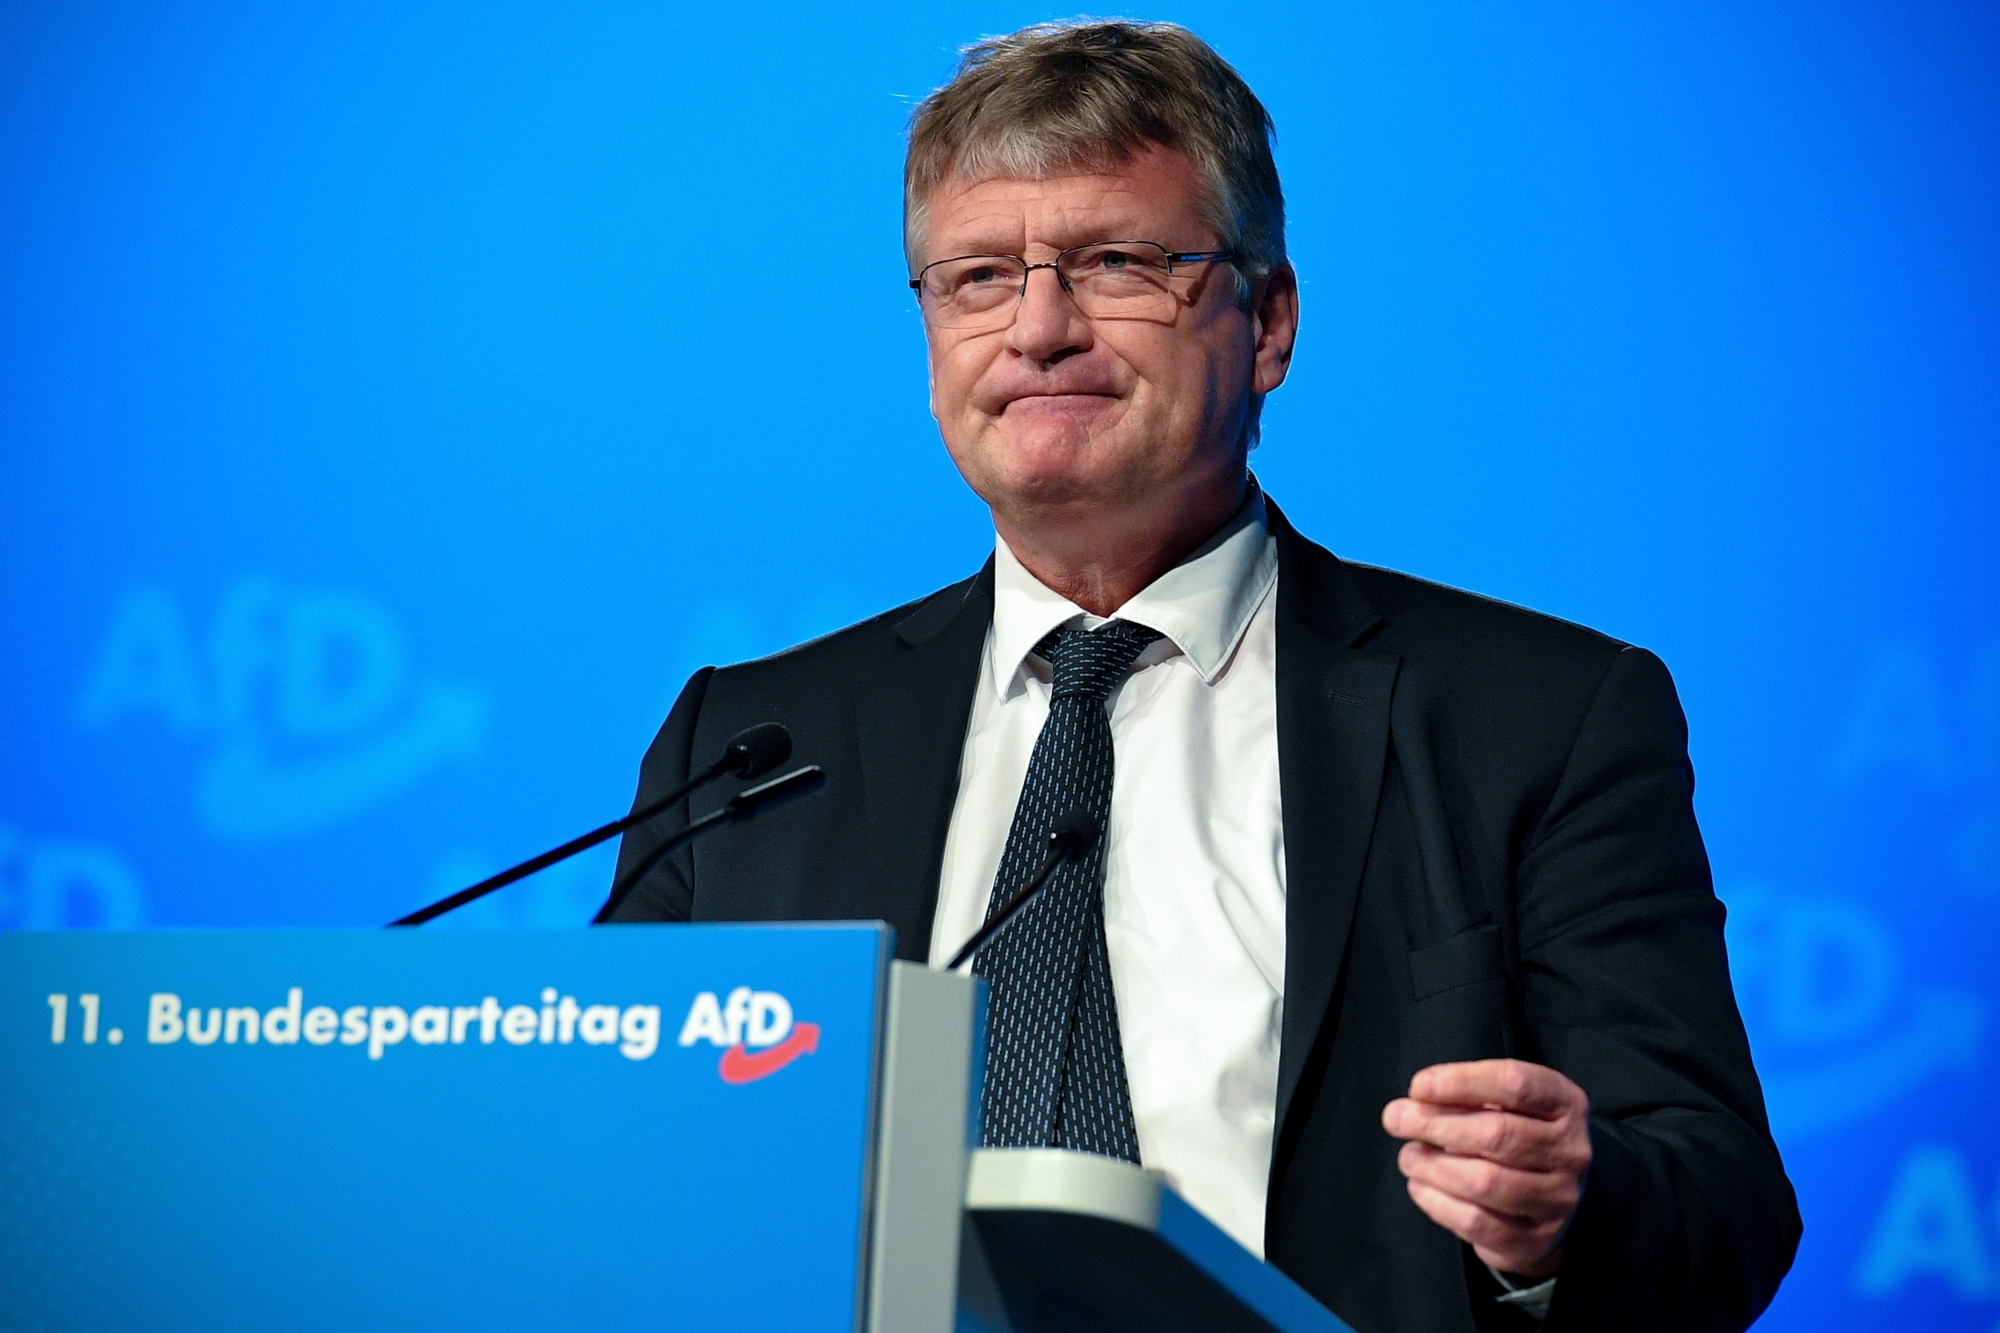 Jörg Meuthen, président de l'AfD, a livré un discours condamnant l'aile dure du parti à ses troupes réunies à Kalkar.